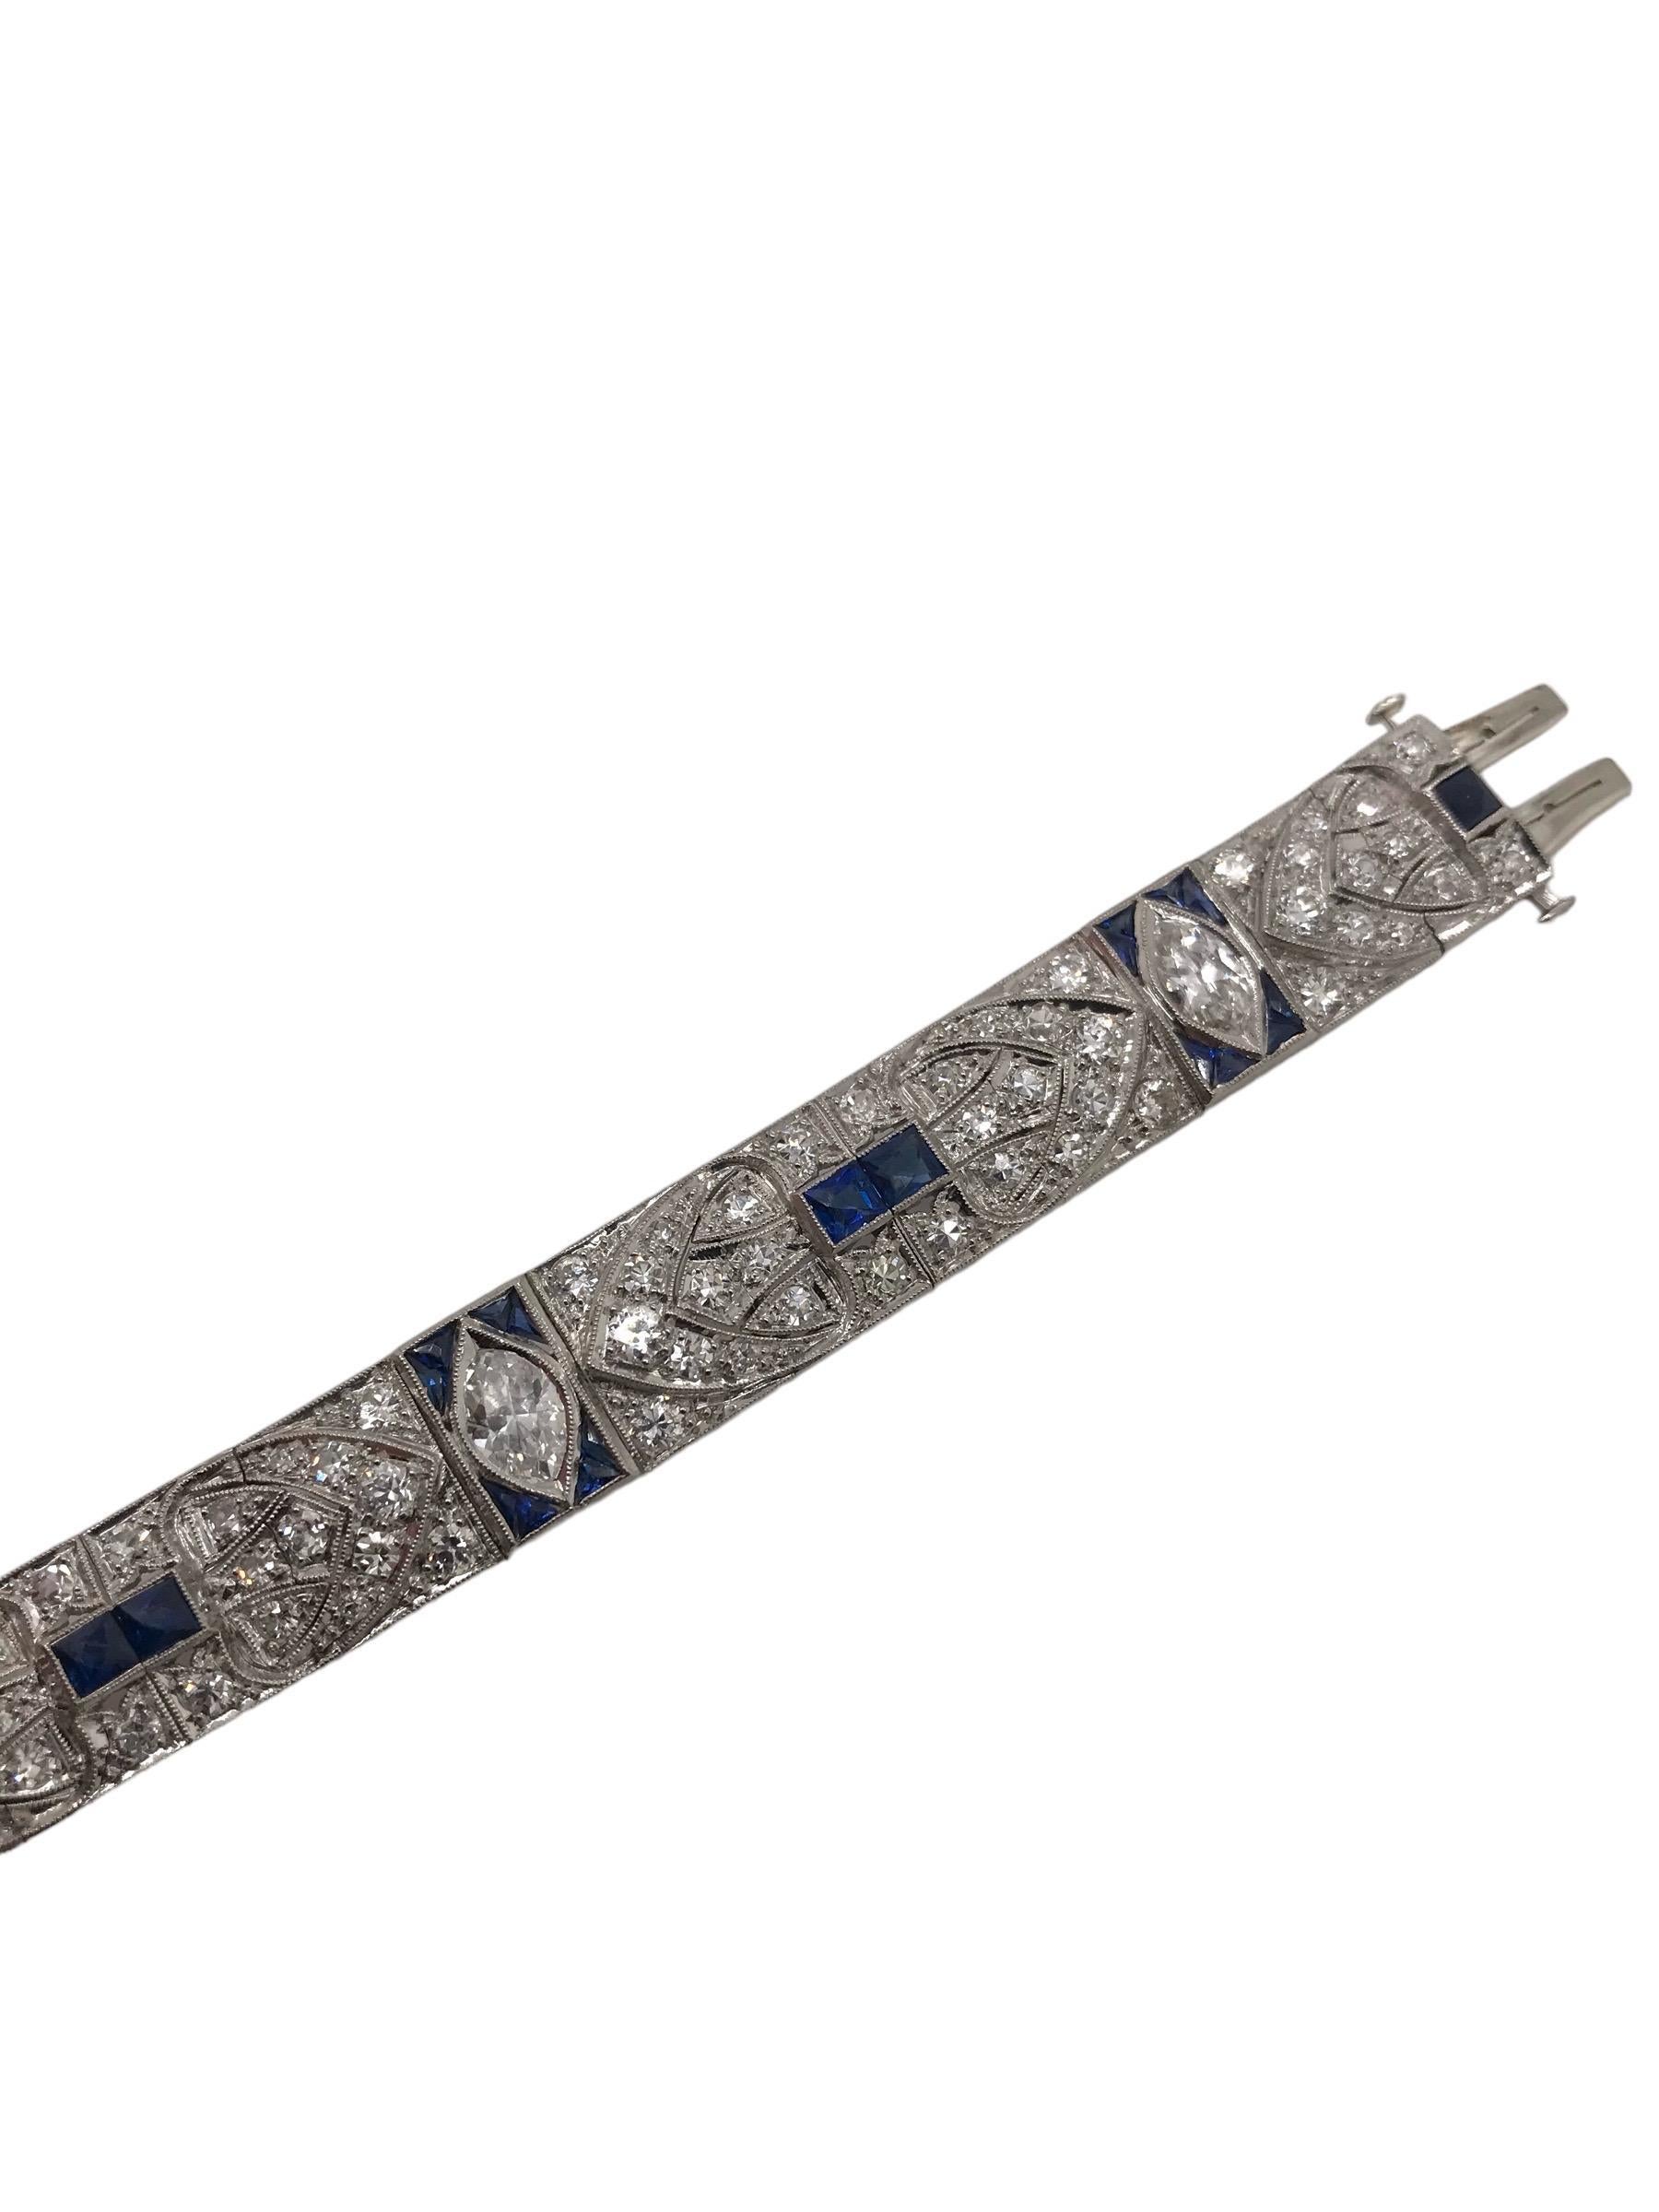 Art Deco Platinum Diamond & Sapphire Bracelet 5.5 Carats For Sale 2